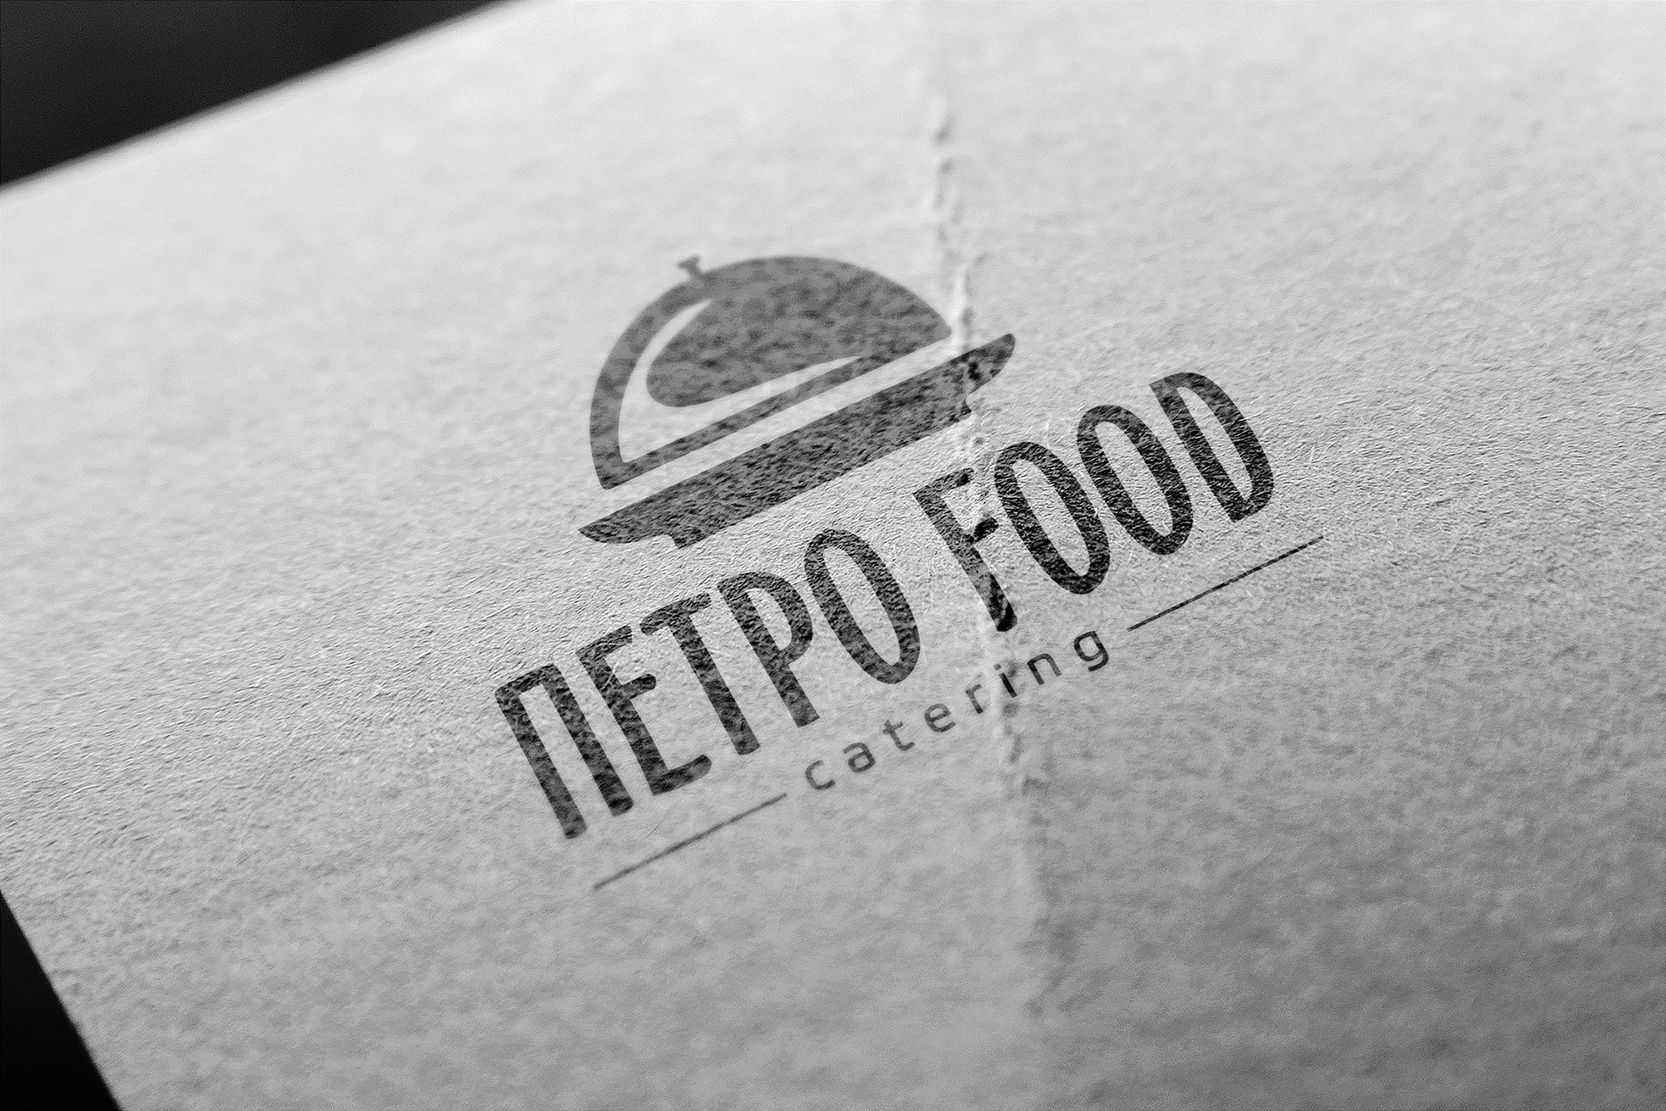 Логотип и фирменный стиль для Петро food  - дизайнер funkielevis